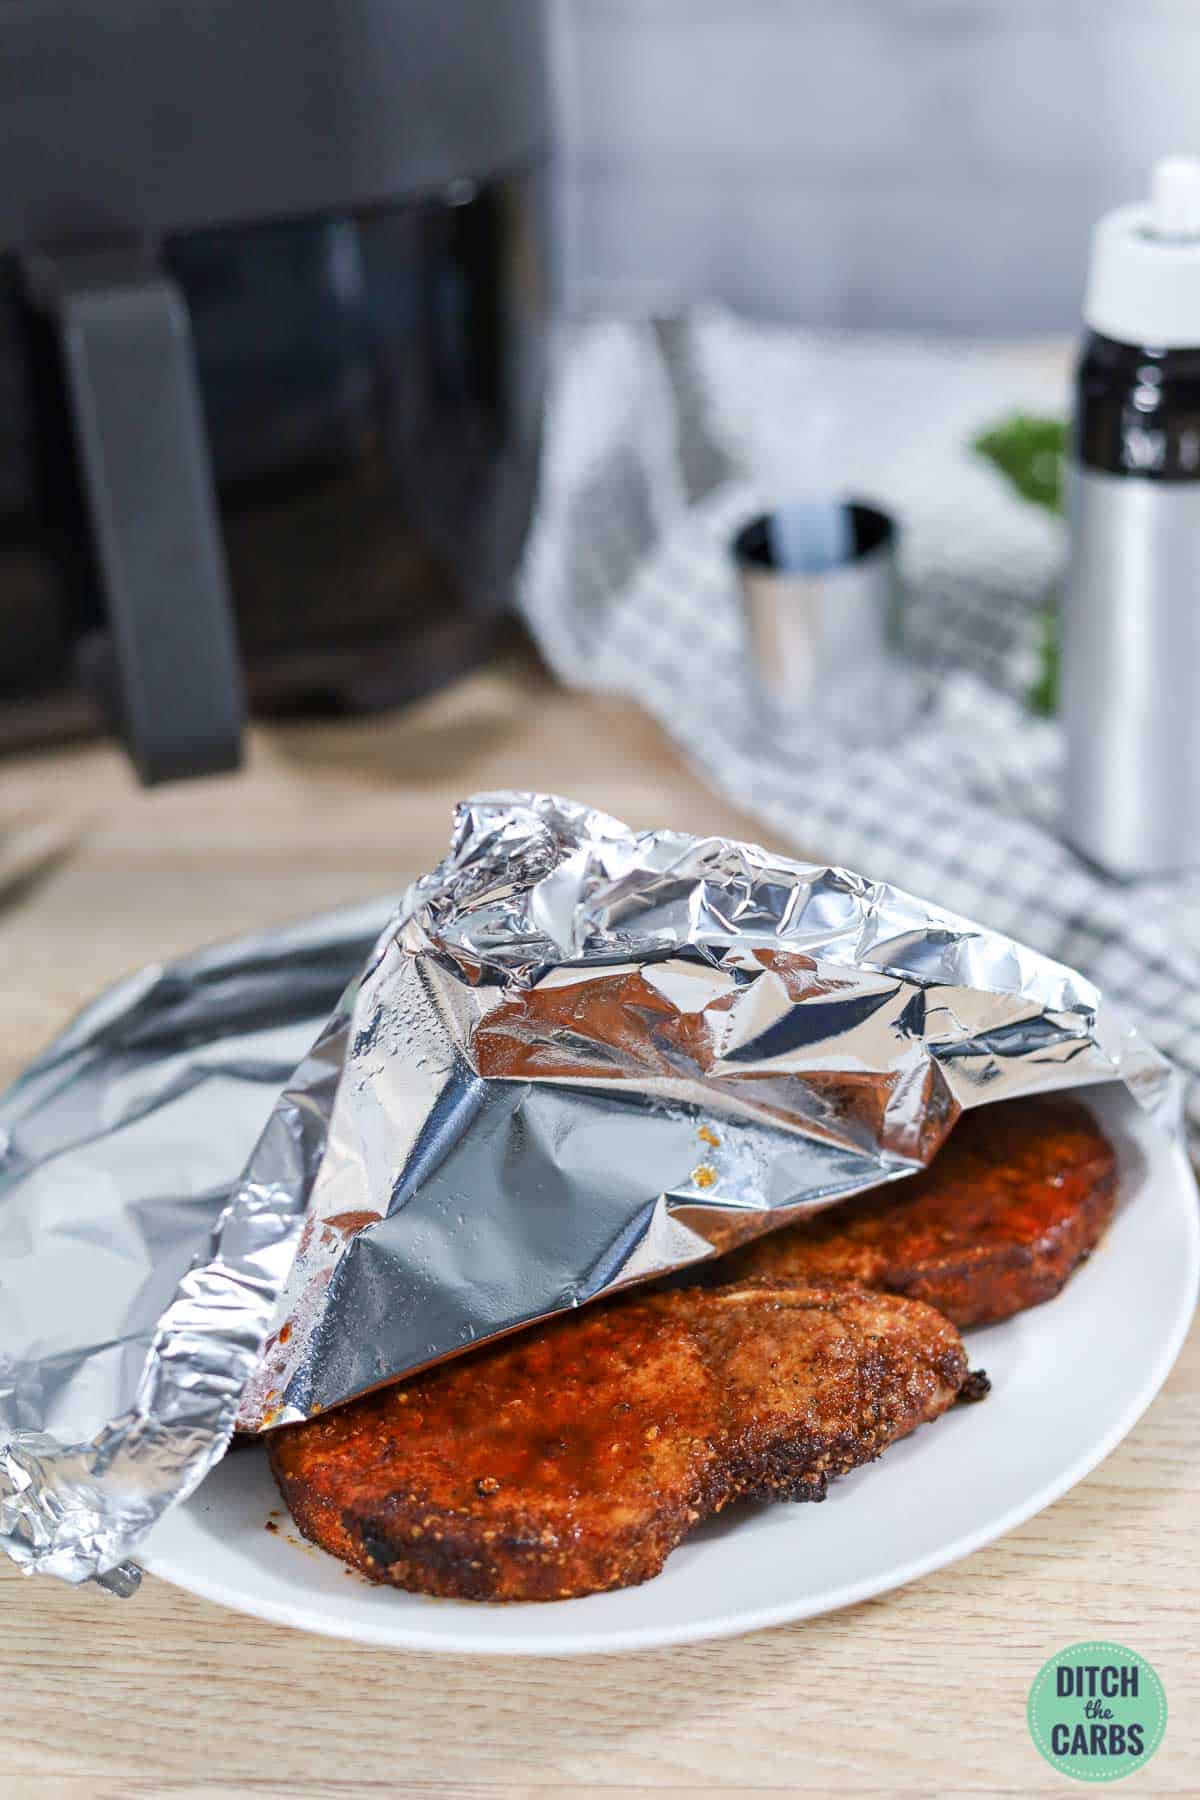 Cooked pork chops resting under aluminum foil